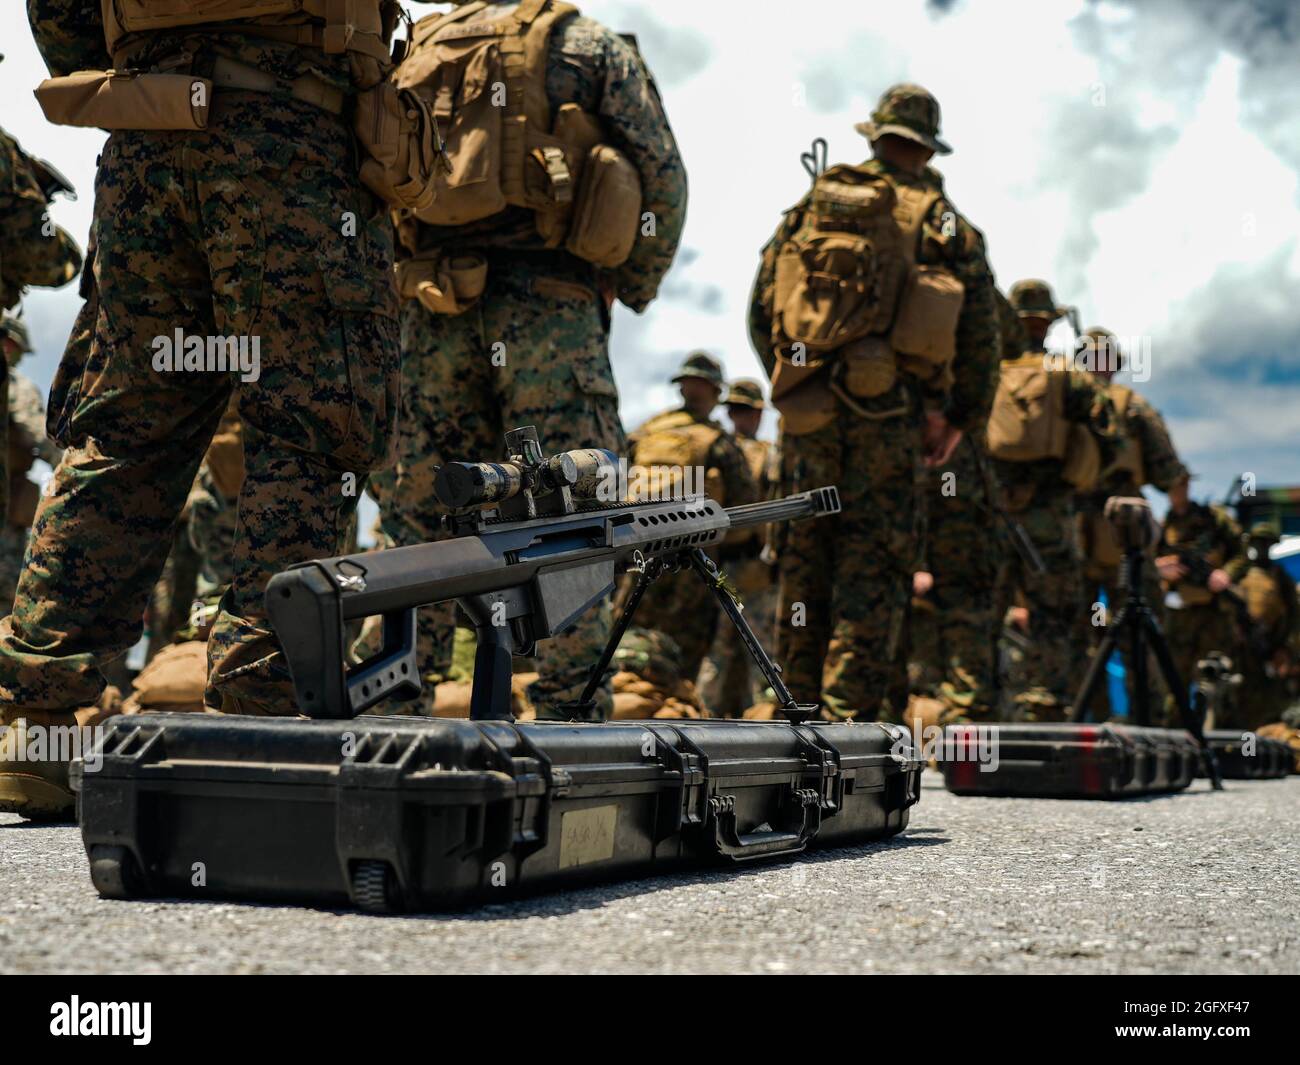 Marines de EE.UU. Con Batallón de Logística de Combate 4, 3D Marine Logistics Group, y 2D Batallón, 3D Marines, 3D Marine Division ETAPA un fusil de aplicación especial de calibre M107 .50 durante una inspección integrada de respuesta rápida en la Base Aérea de Kadena, Okinawa, Japón, 25 de agosto de 2021. Las inspecciones rutinarias de aviso corto garantizan que los III Marines MEF estén listos para desplegar y mantener rápidamente la seguridad regional en el Indo-Pacífico. 3D MLG, con sede en Okinawa, Japón, es una unidad de combate desplegada hacia adelante que sirve como la estructura integral de apoyo a la logística y al servicio de combate de la III Fuerza Expedicionaria Marina Foto de stock